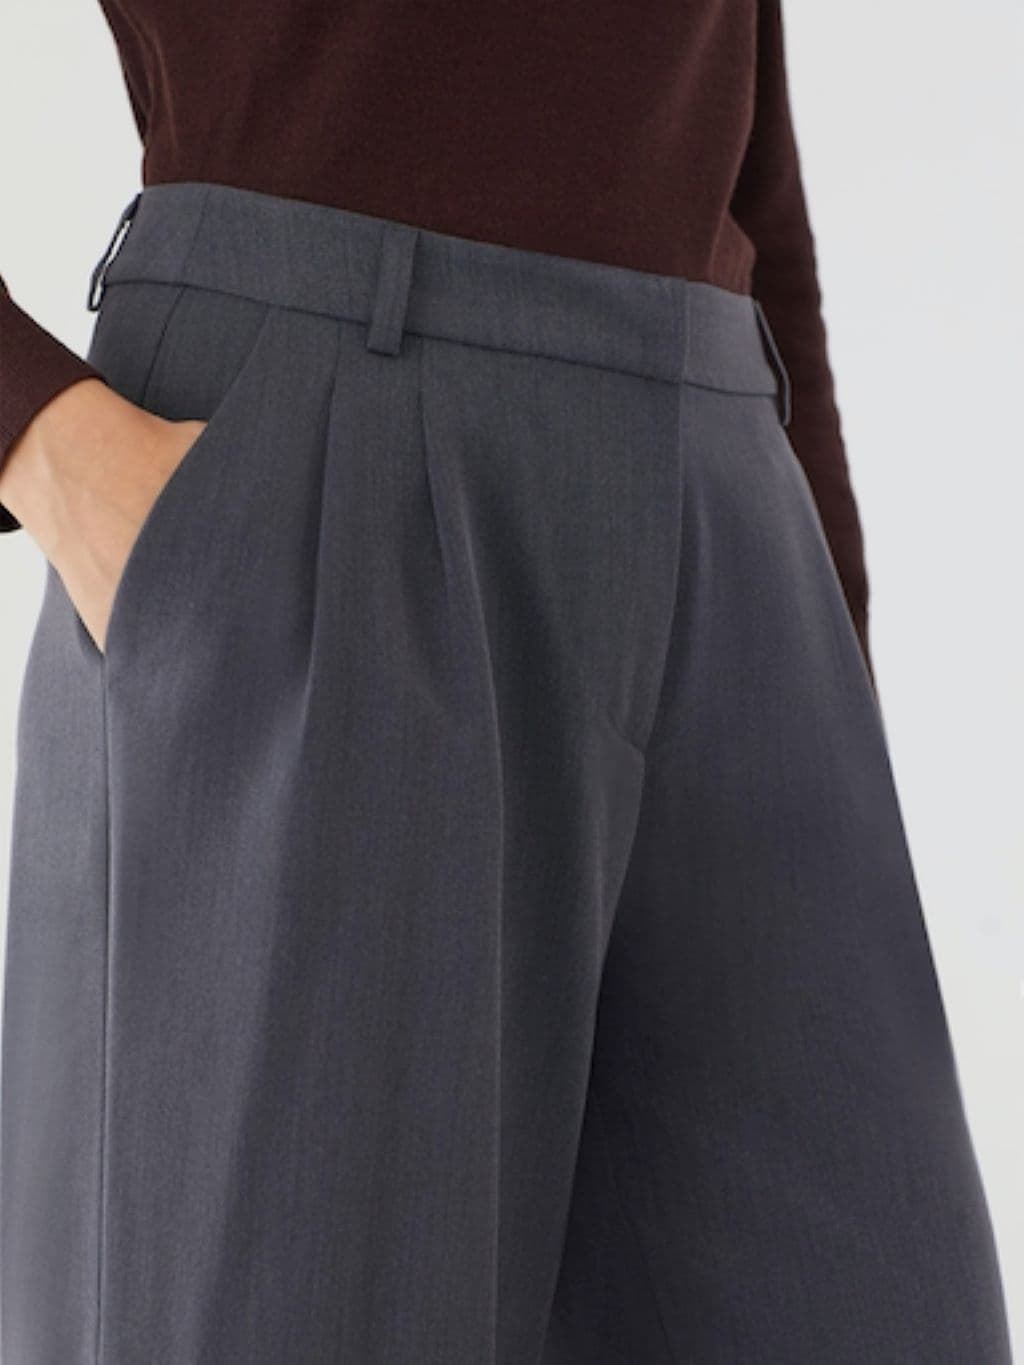 Pantalón culotte pinzas - Imagen 5